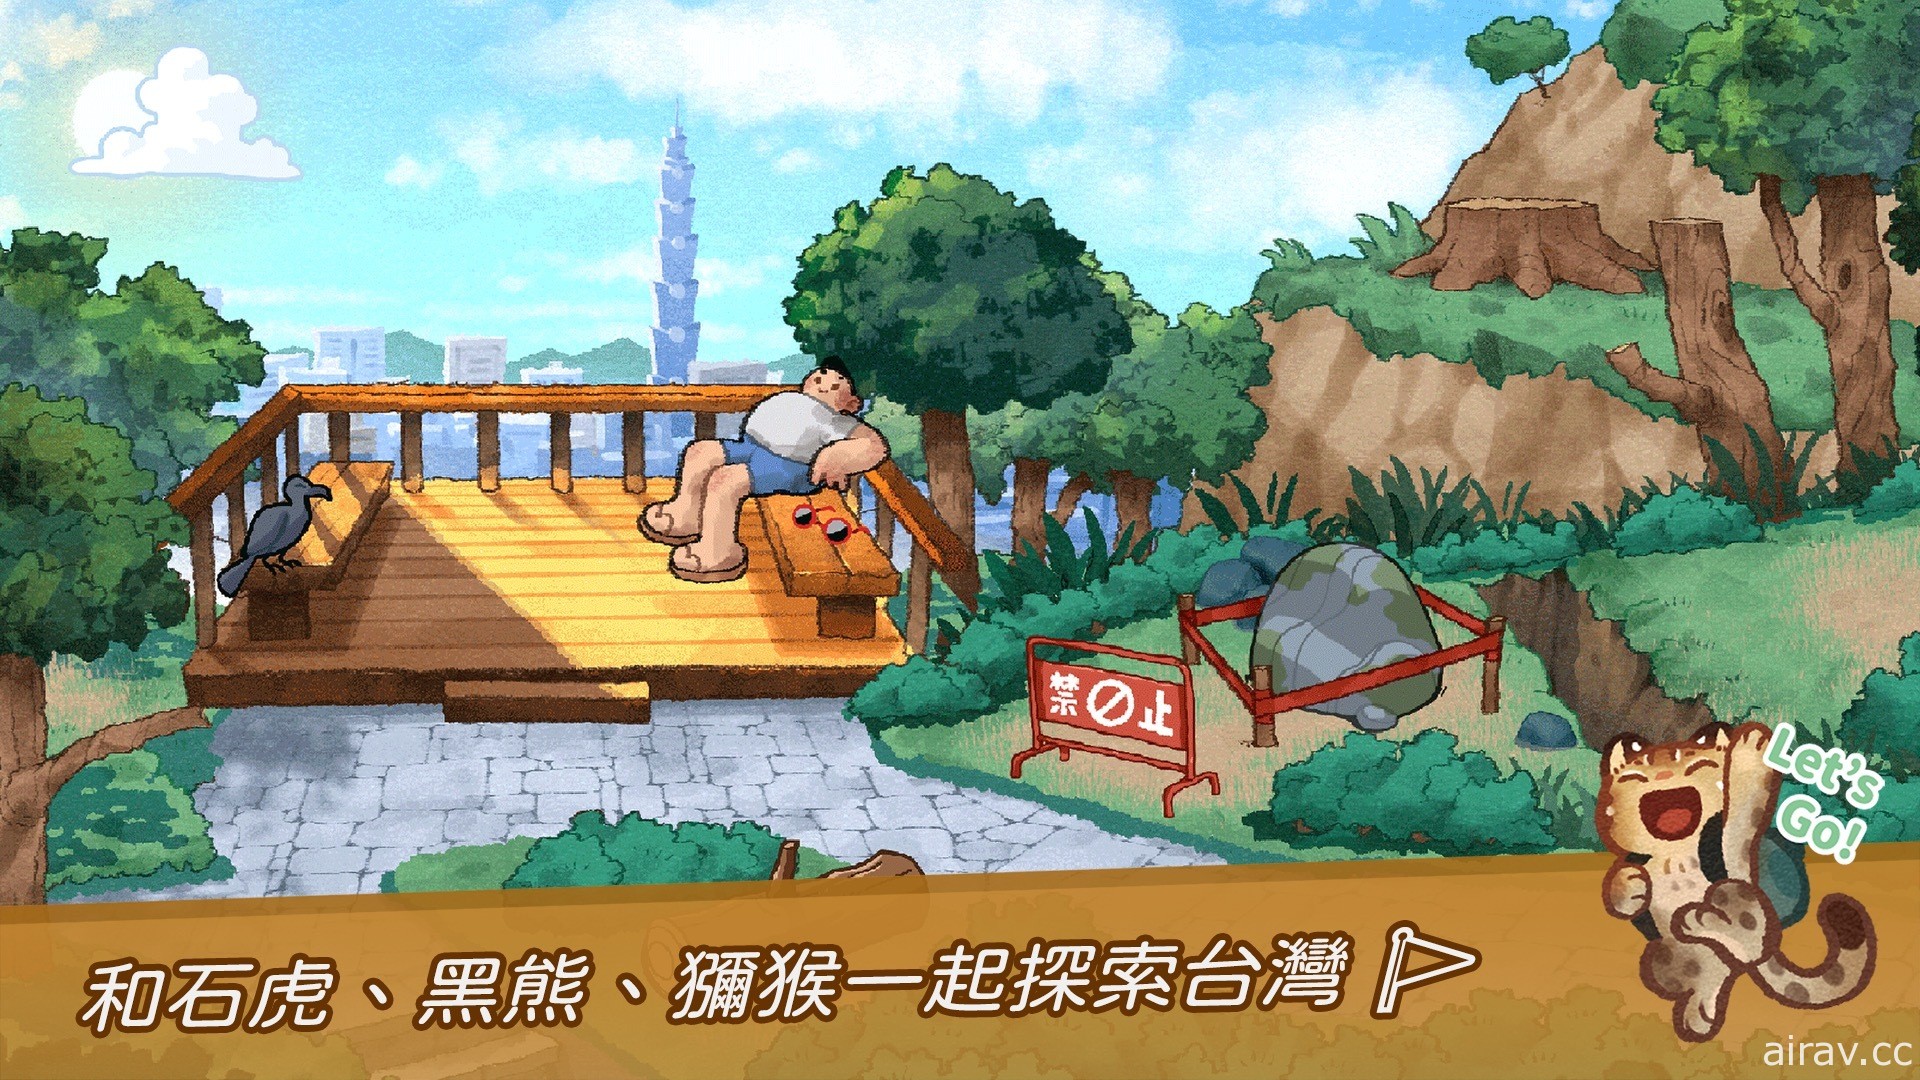 以台湾原生动物为主题《回家 - Homeward》宣布 2 月下旬在 Steam 平台上市